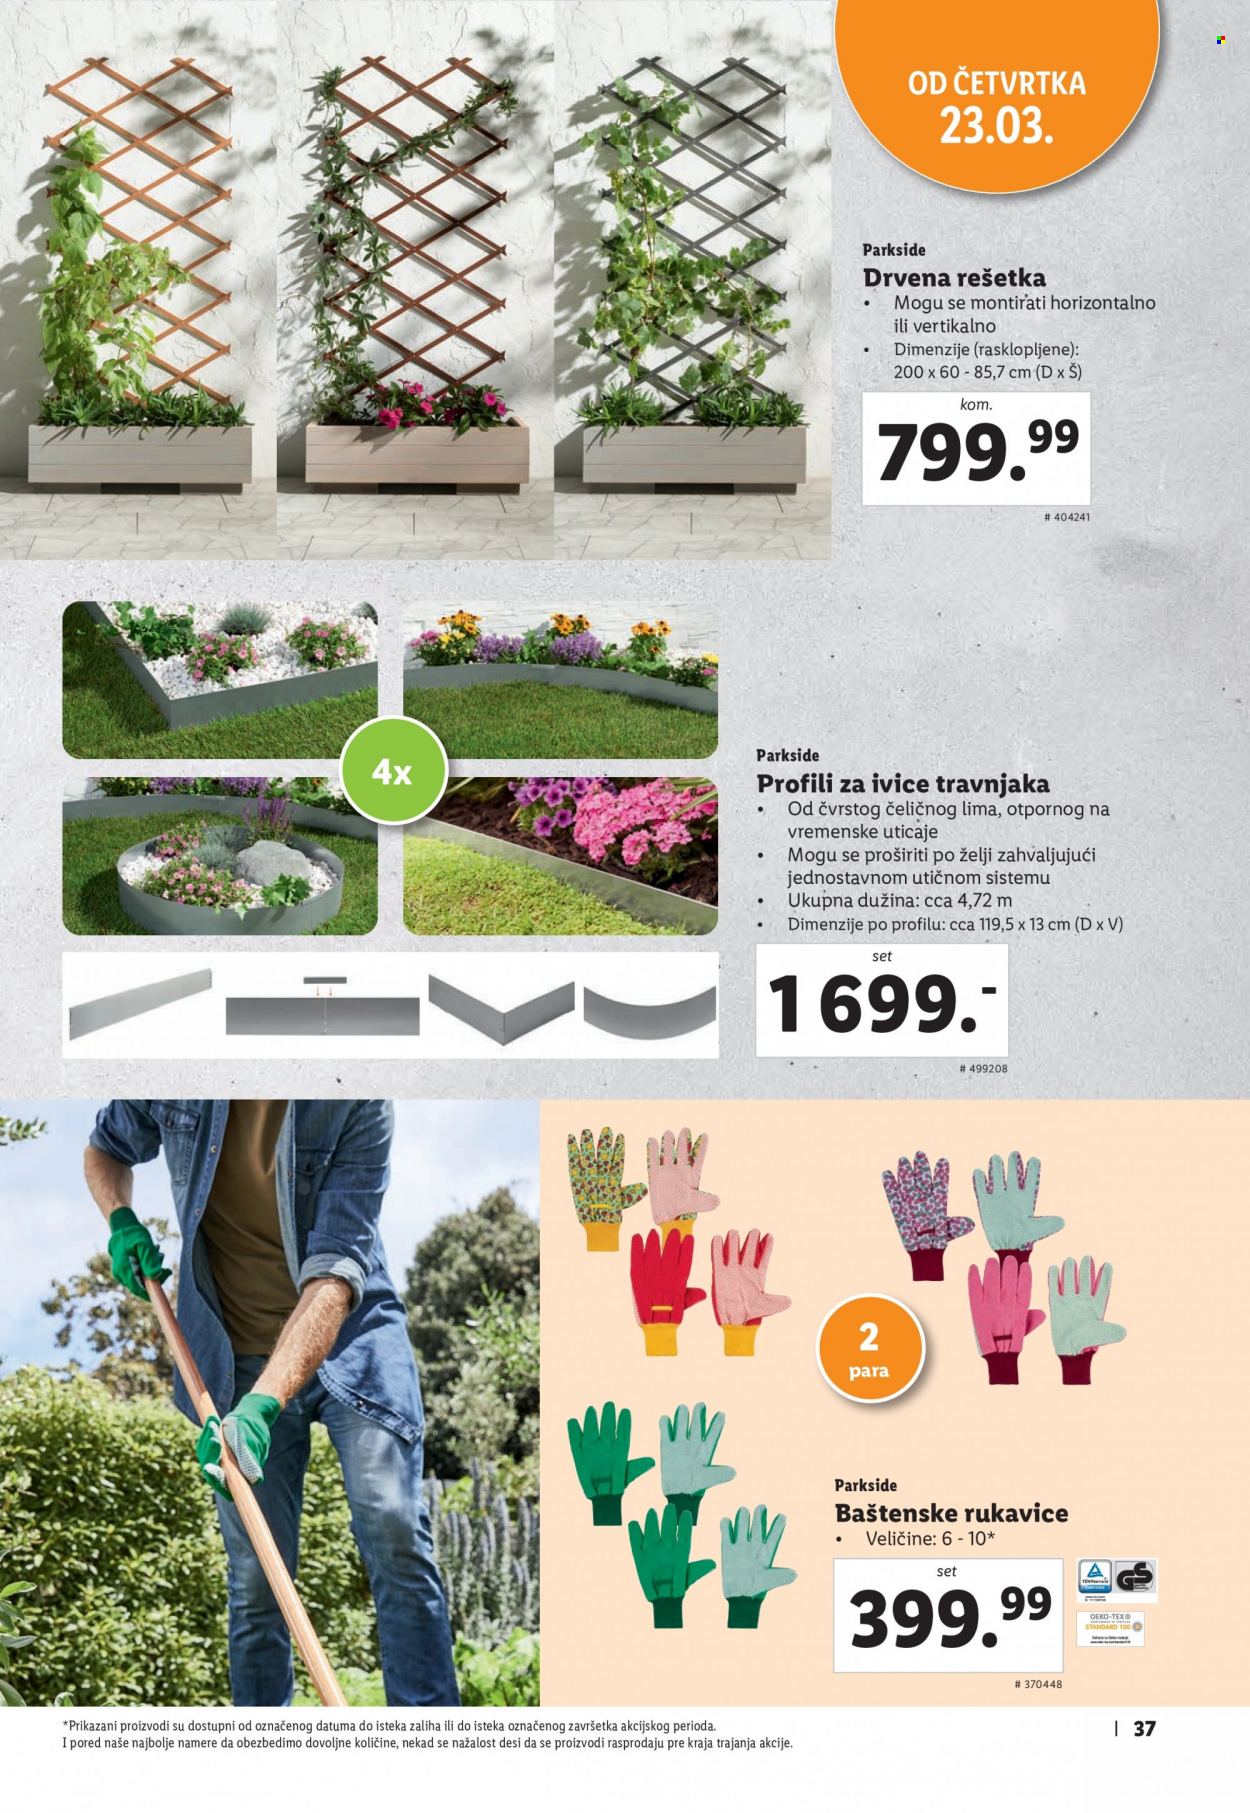 thumbnail - Lidl katalog - Proizvodi na akciji - Parkside, rešetka za biljke, betonski ivičnjak, baštenske rukavice, rukavice. Stranica 37.